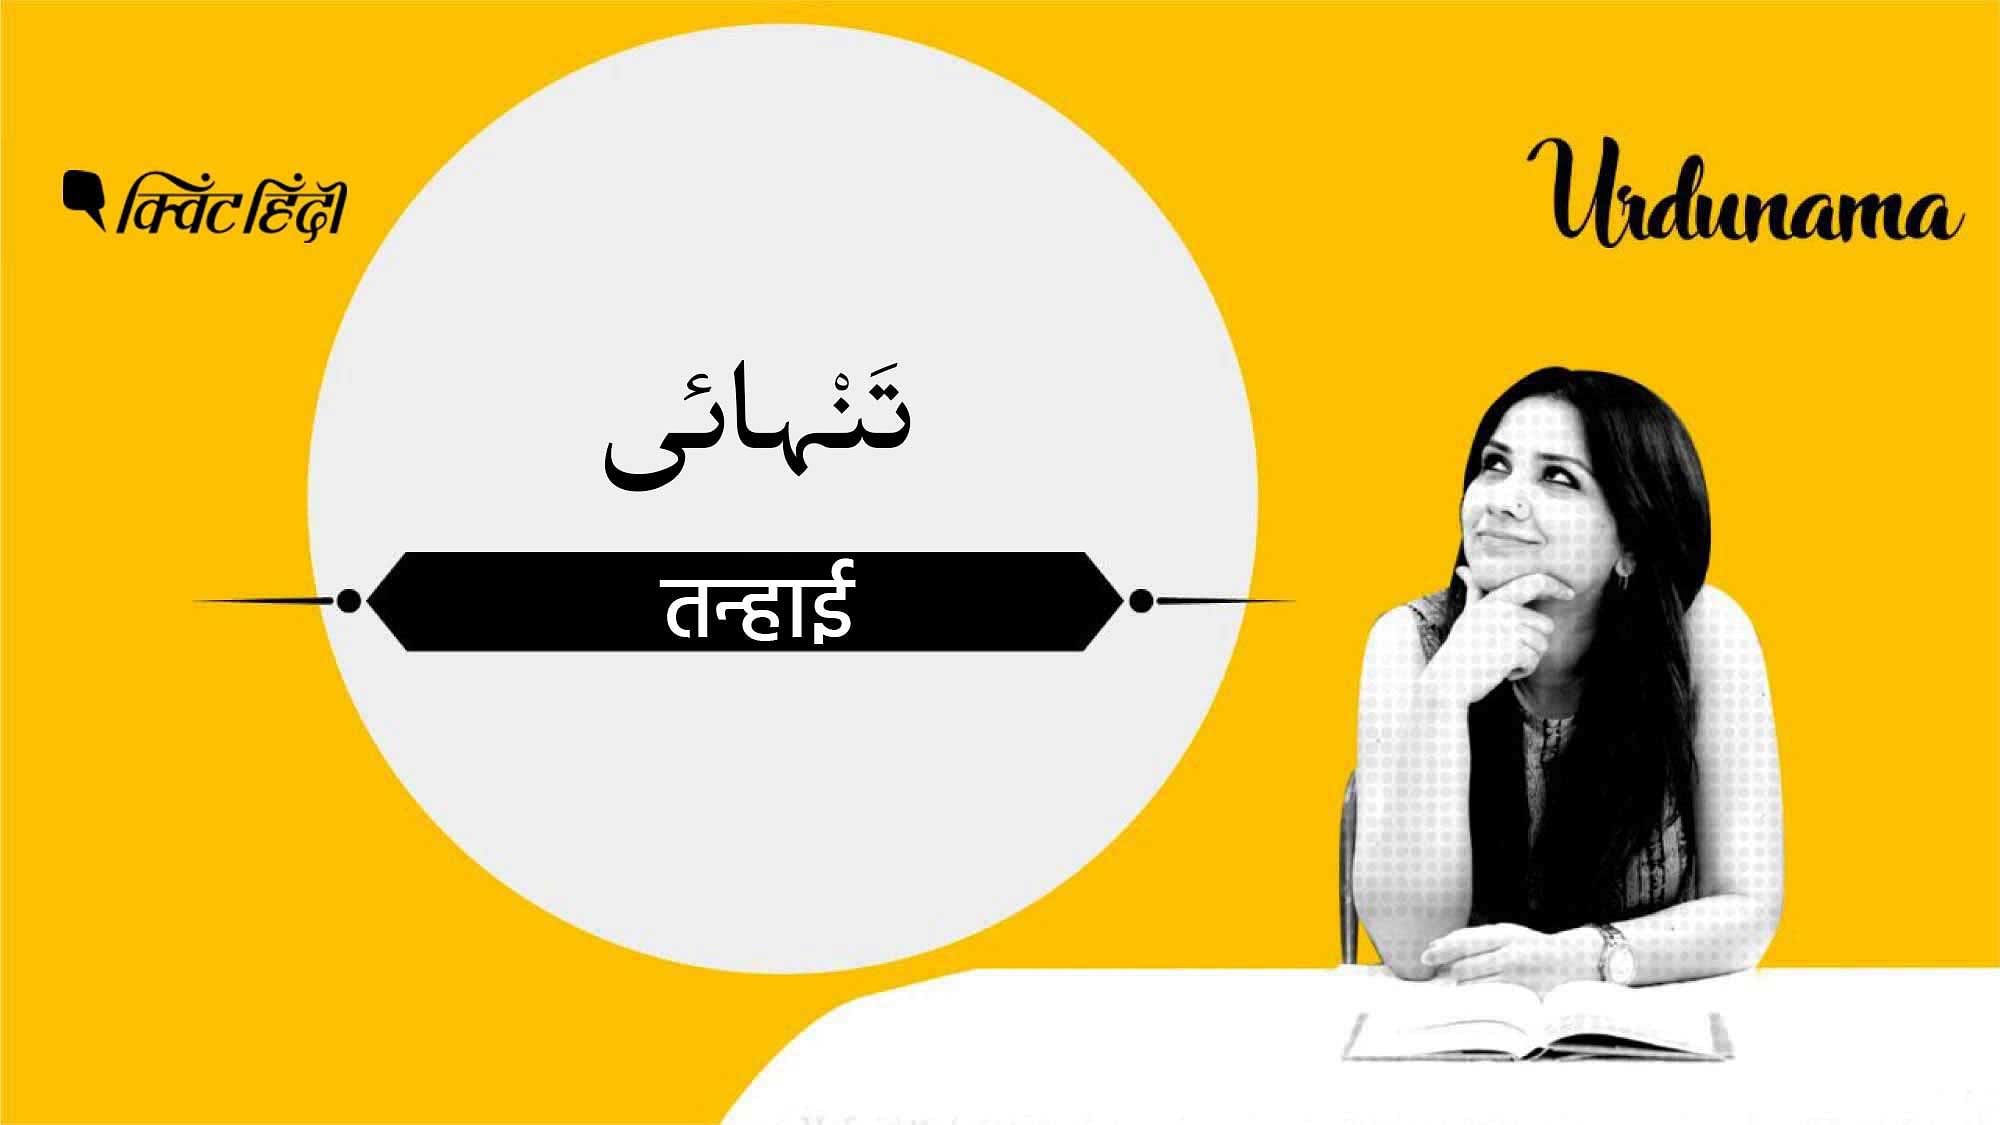 इस एपिसोड में हम ‘तन्हा’ शब्द के हवाले से उर्दू कविता में अकेलेपन के विषय को समझेंगे.